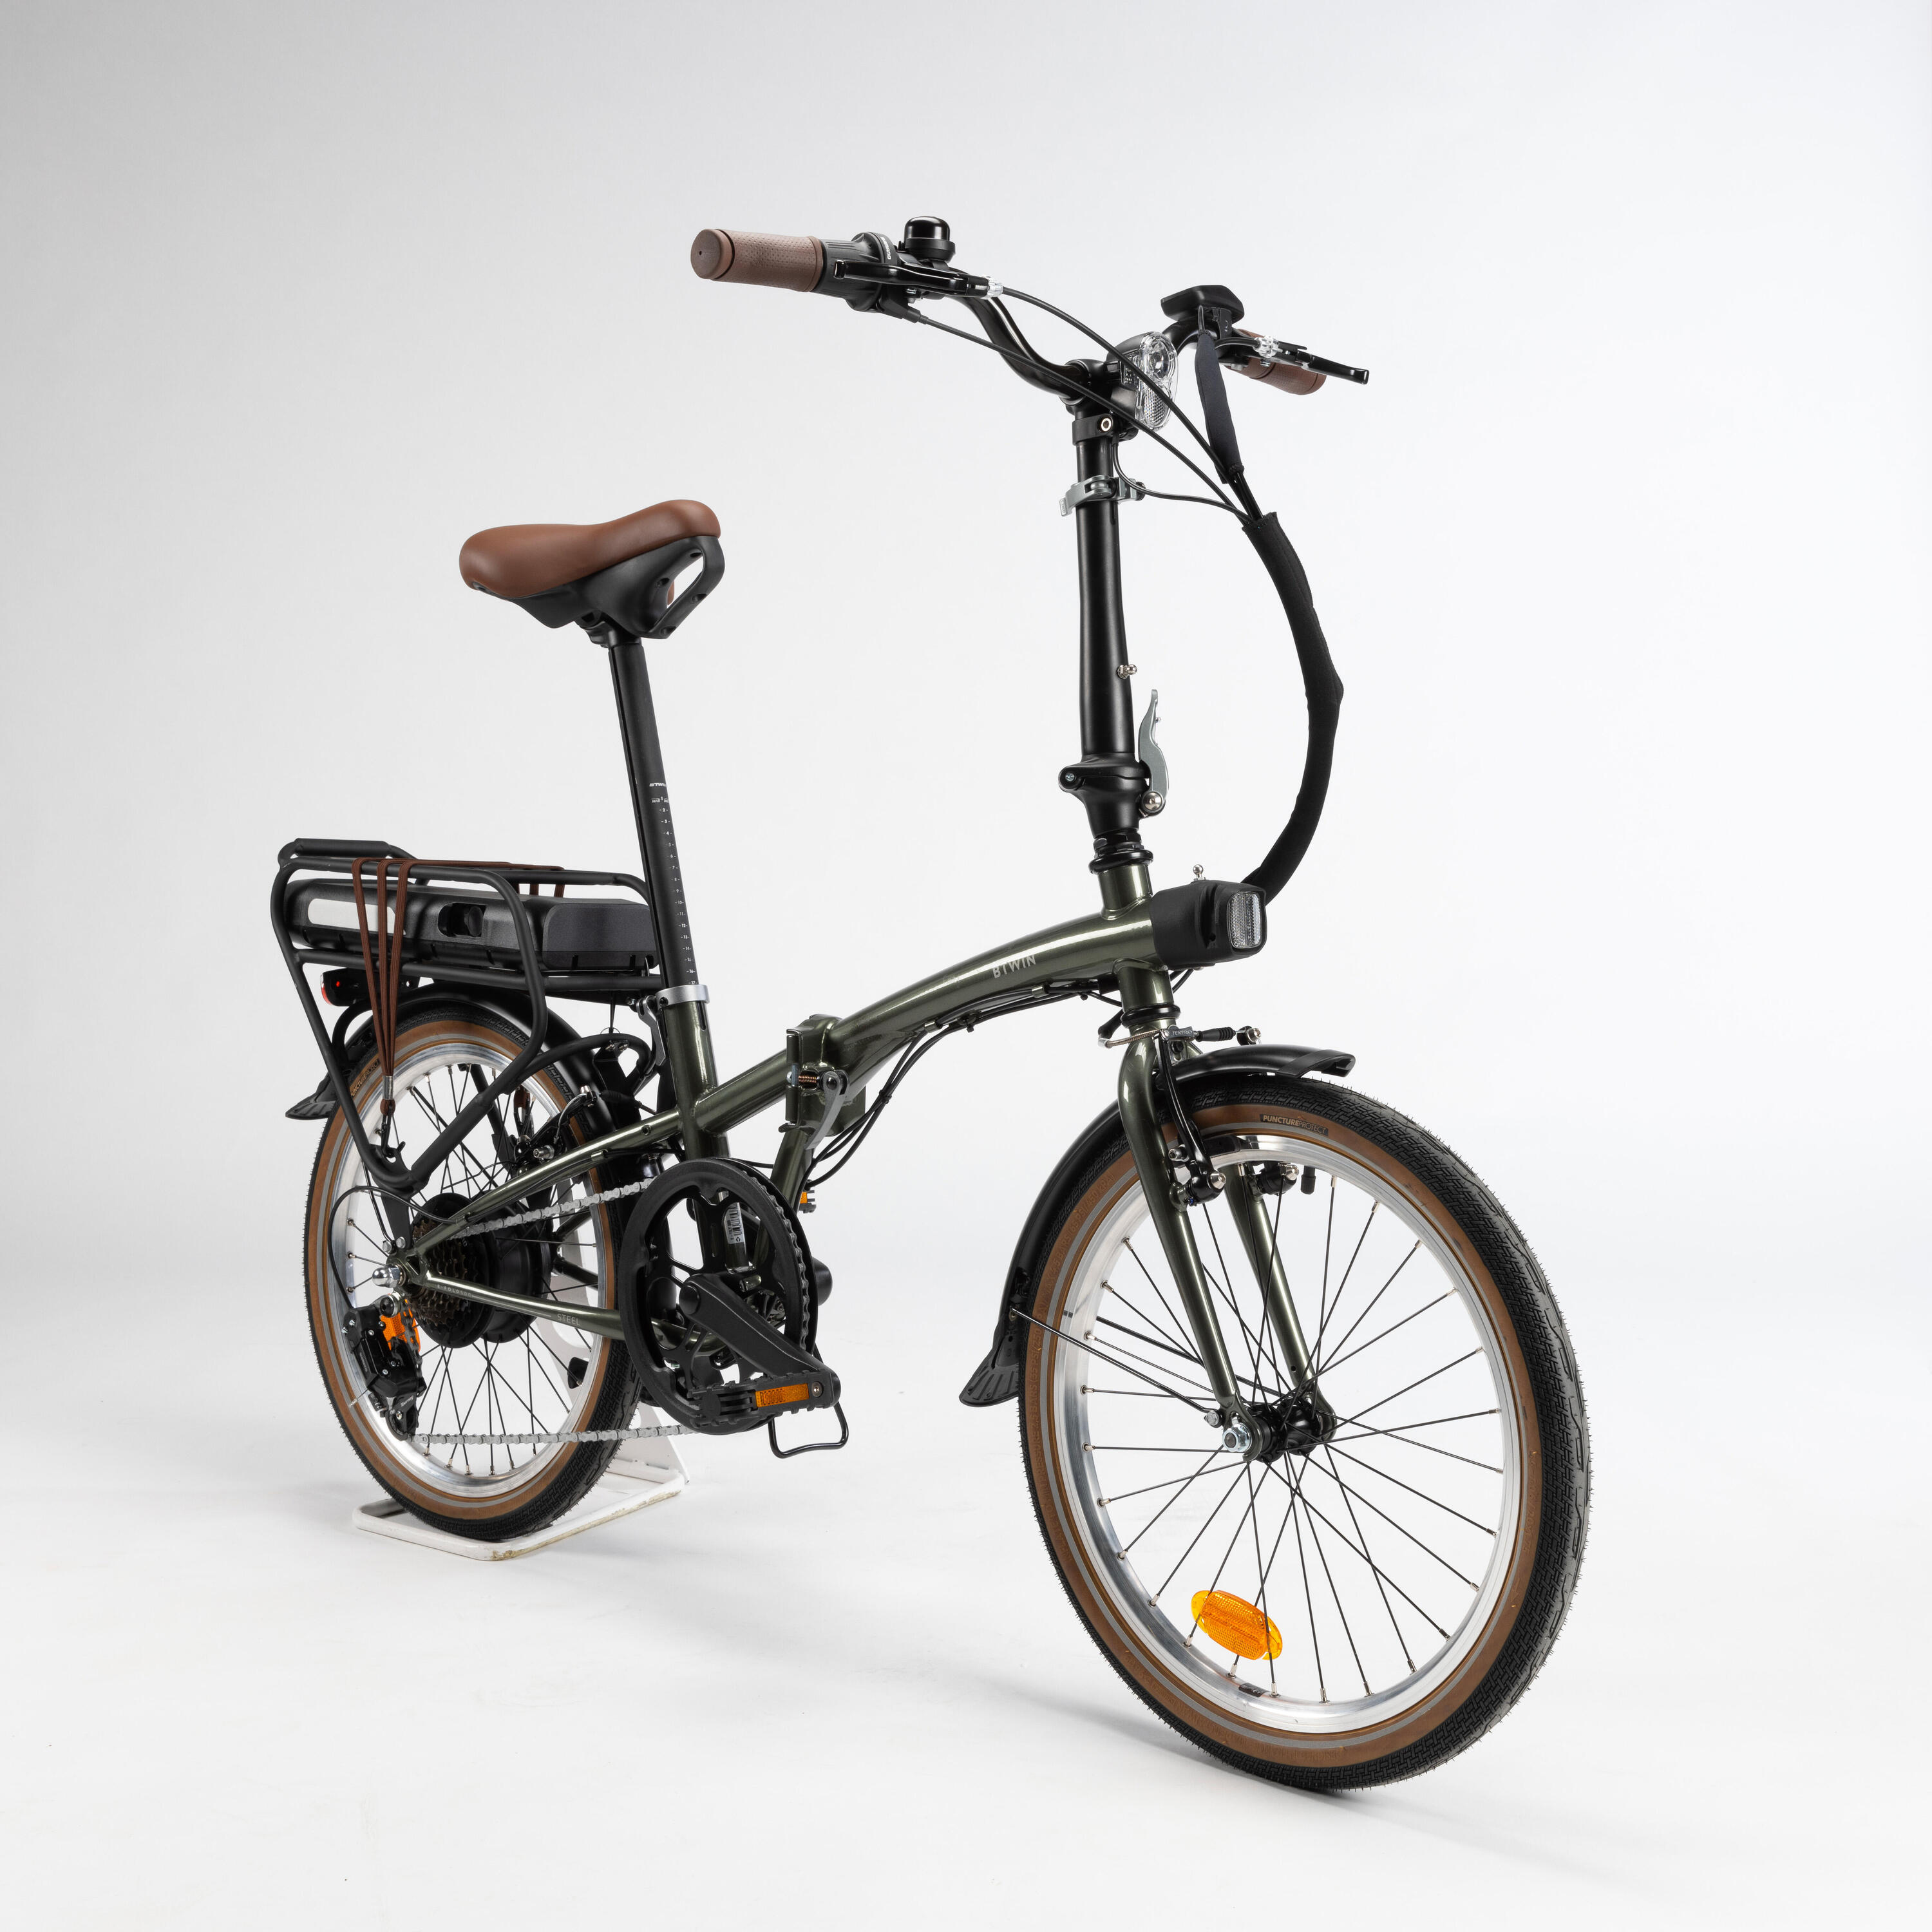 Découvrez les deux nouveaux vélos électriques pliants à prix très bas signés Decathlon